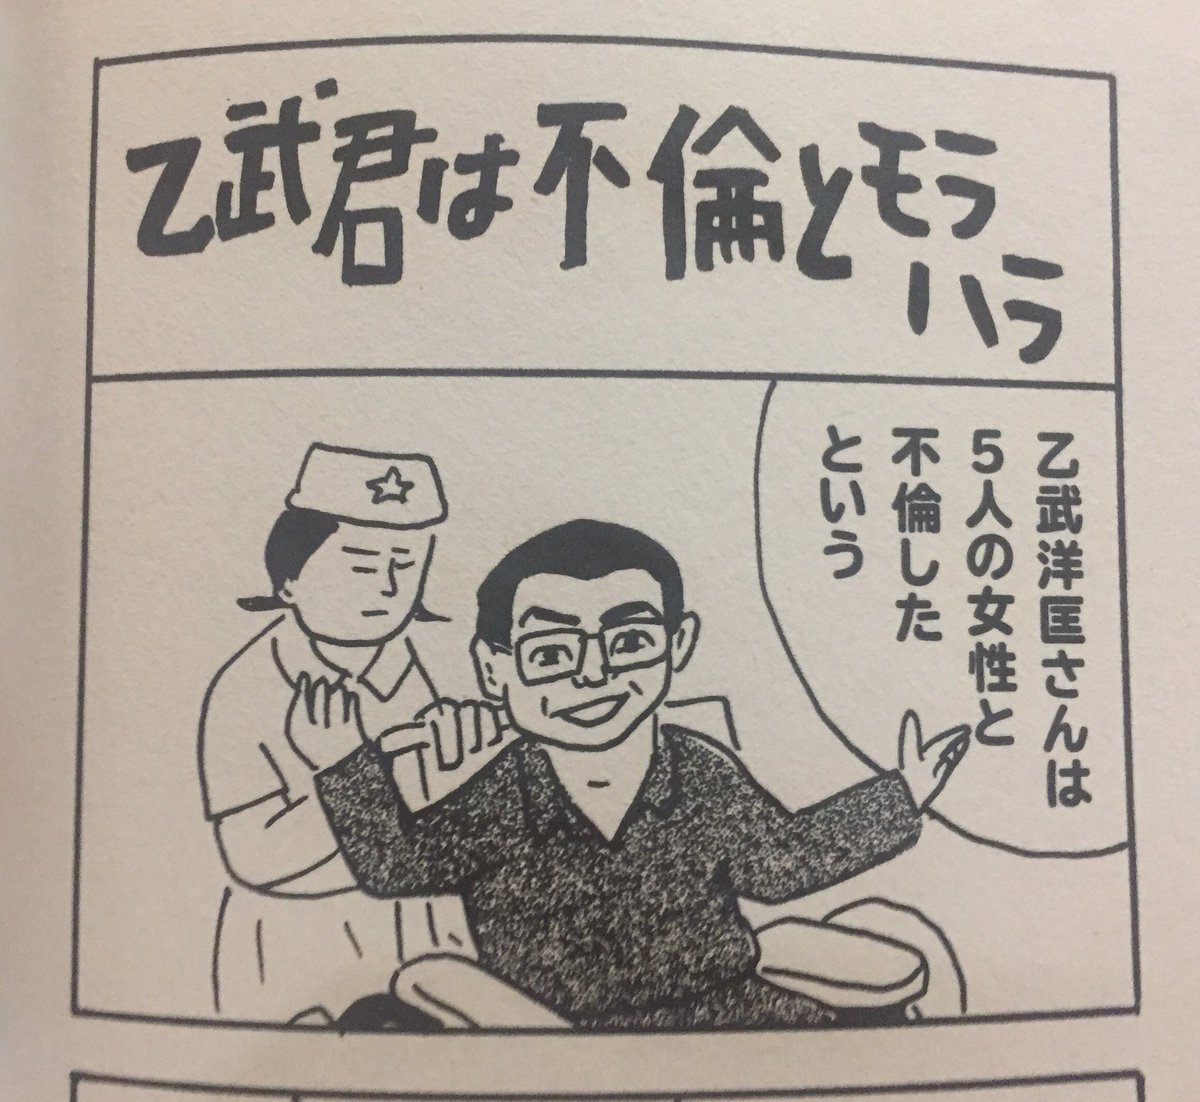 漫画家 蛭子能収さんが書いた乙武wwwwwwww Jのログ おんjまとめブログ